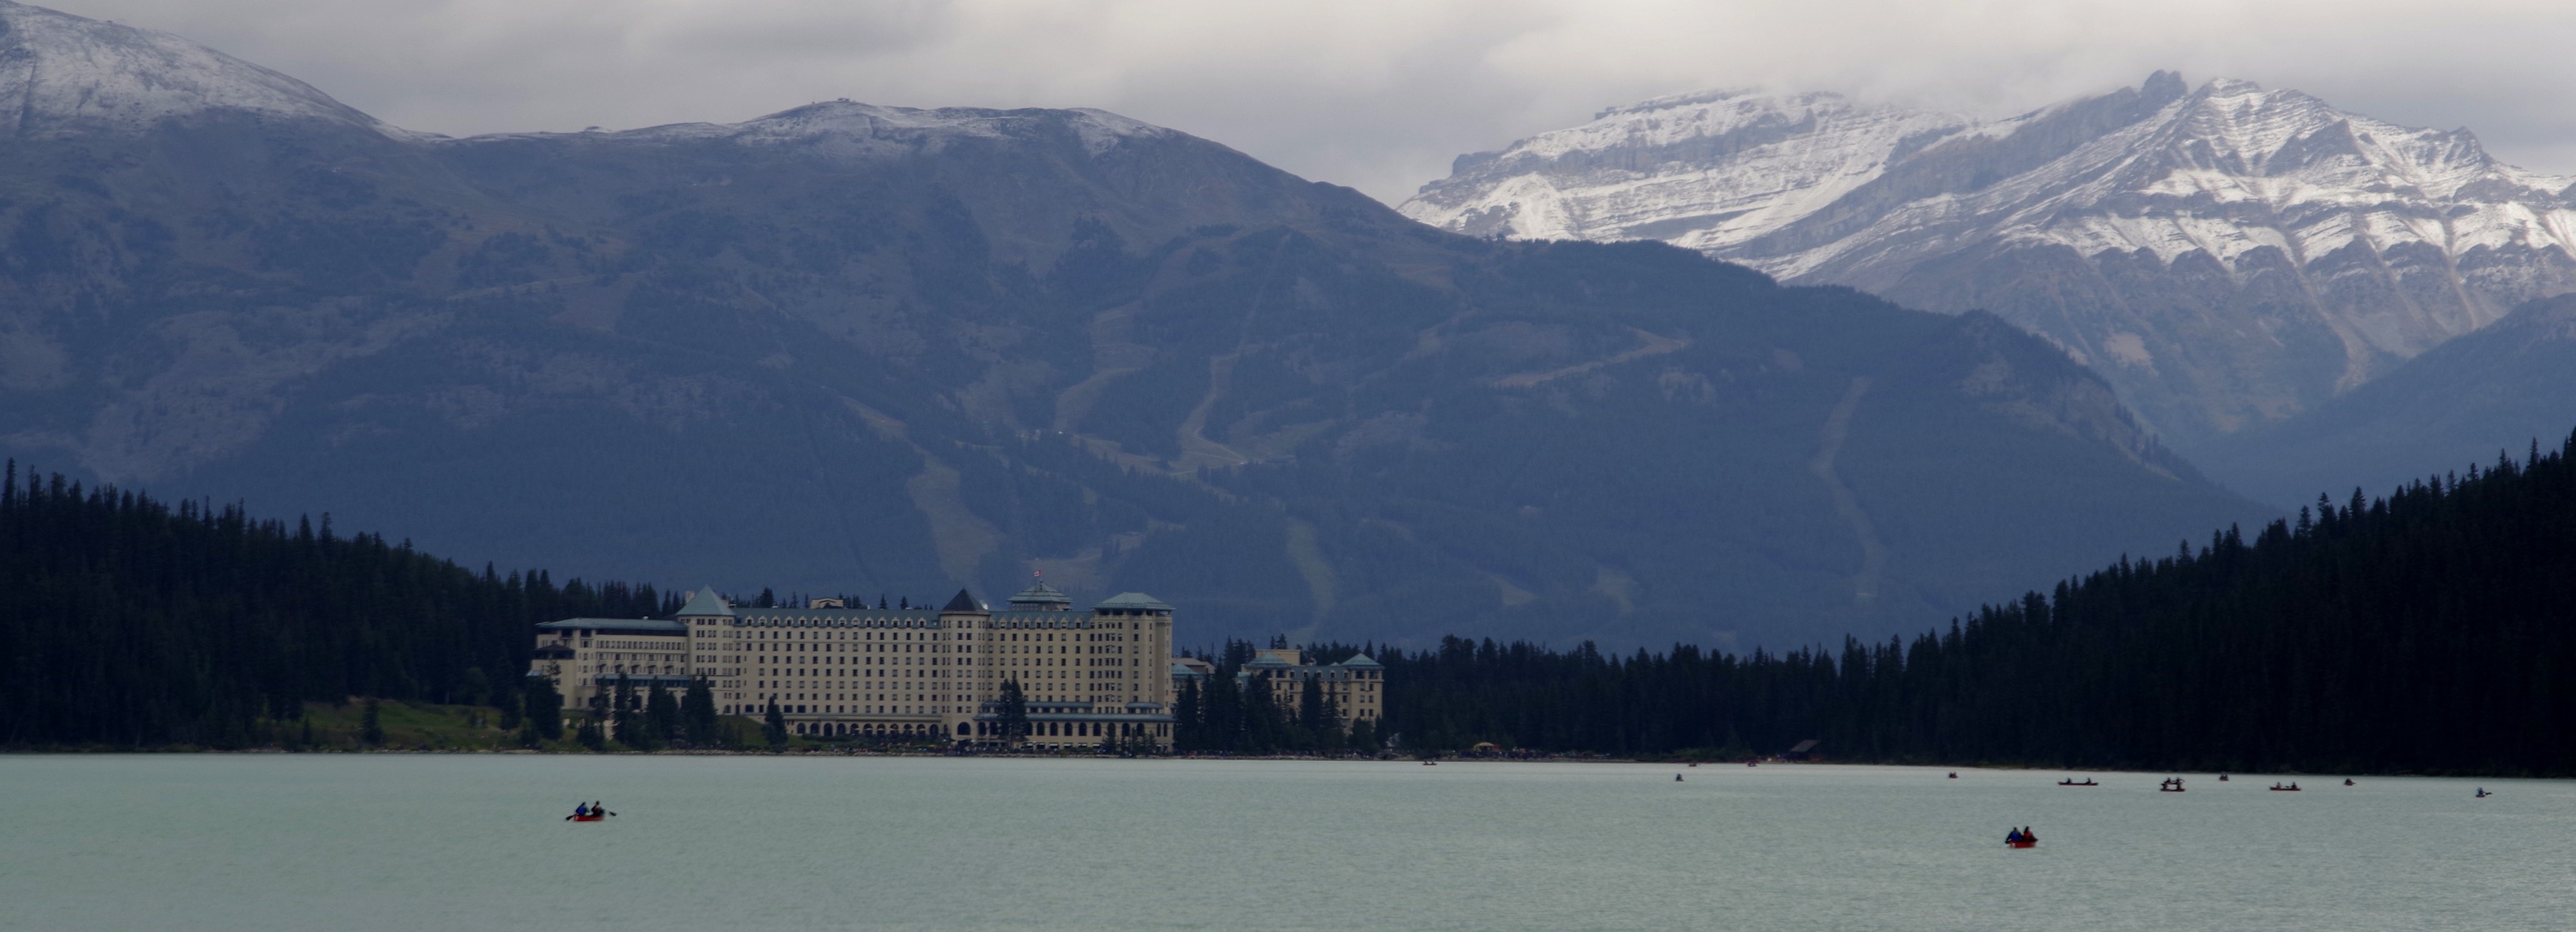 Hotel  Fairmont Lac Louiseet piste de ski